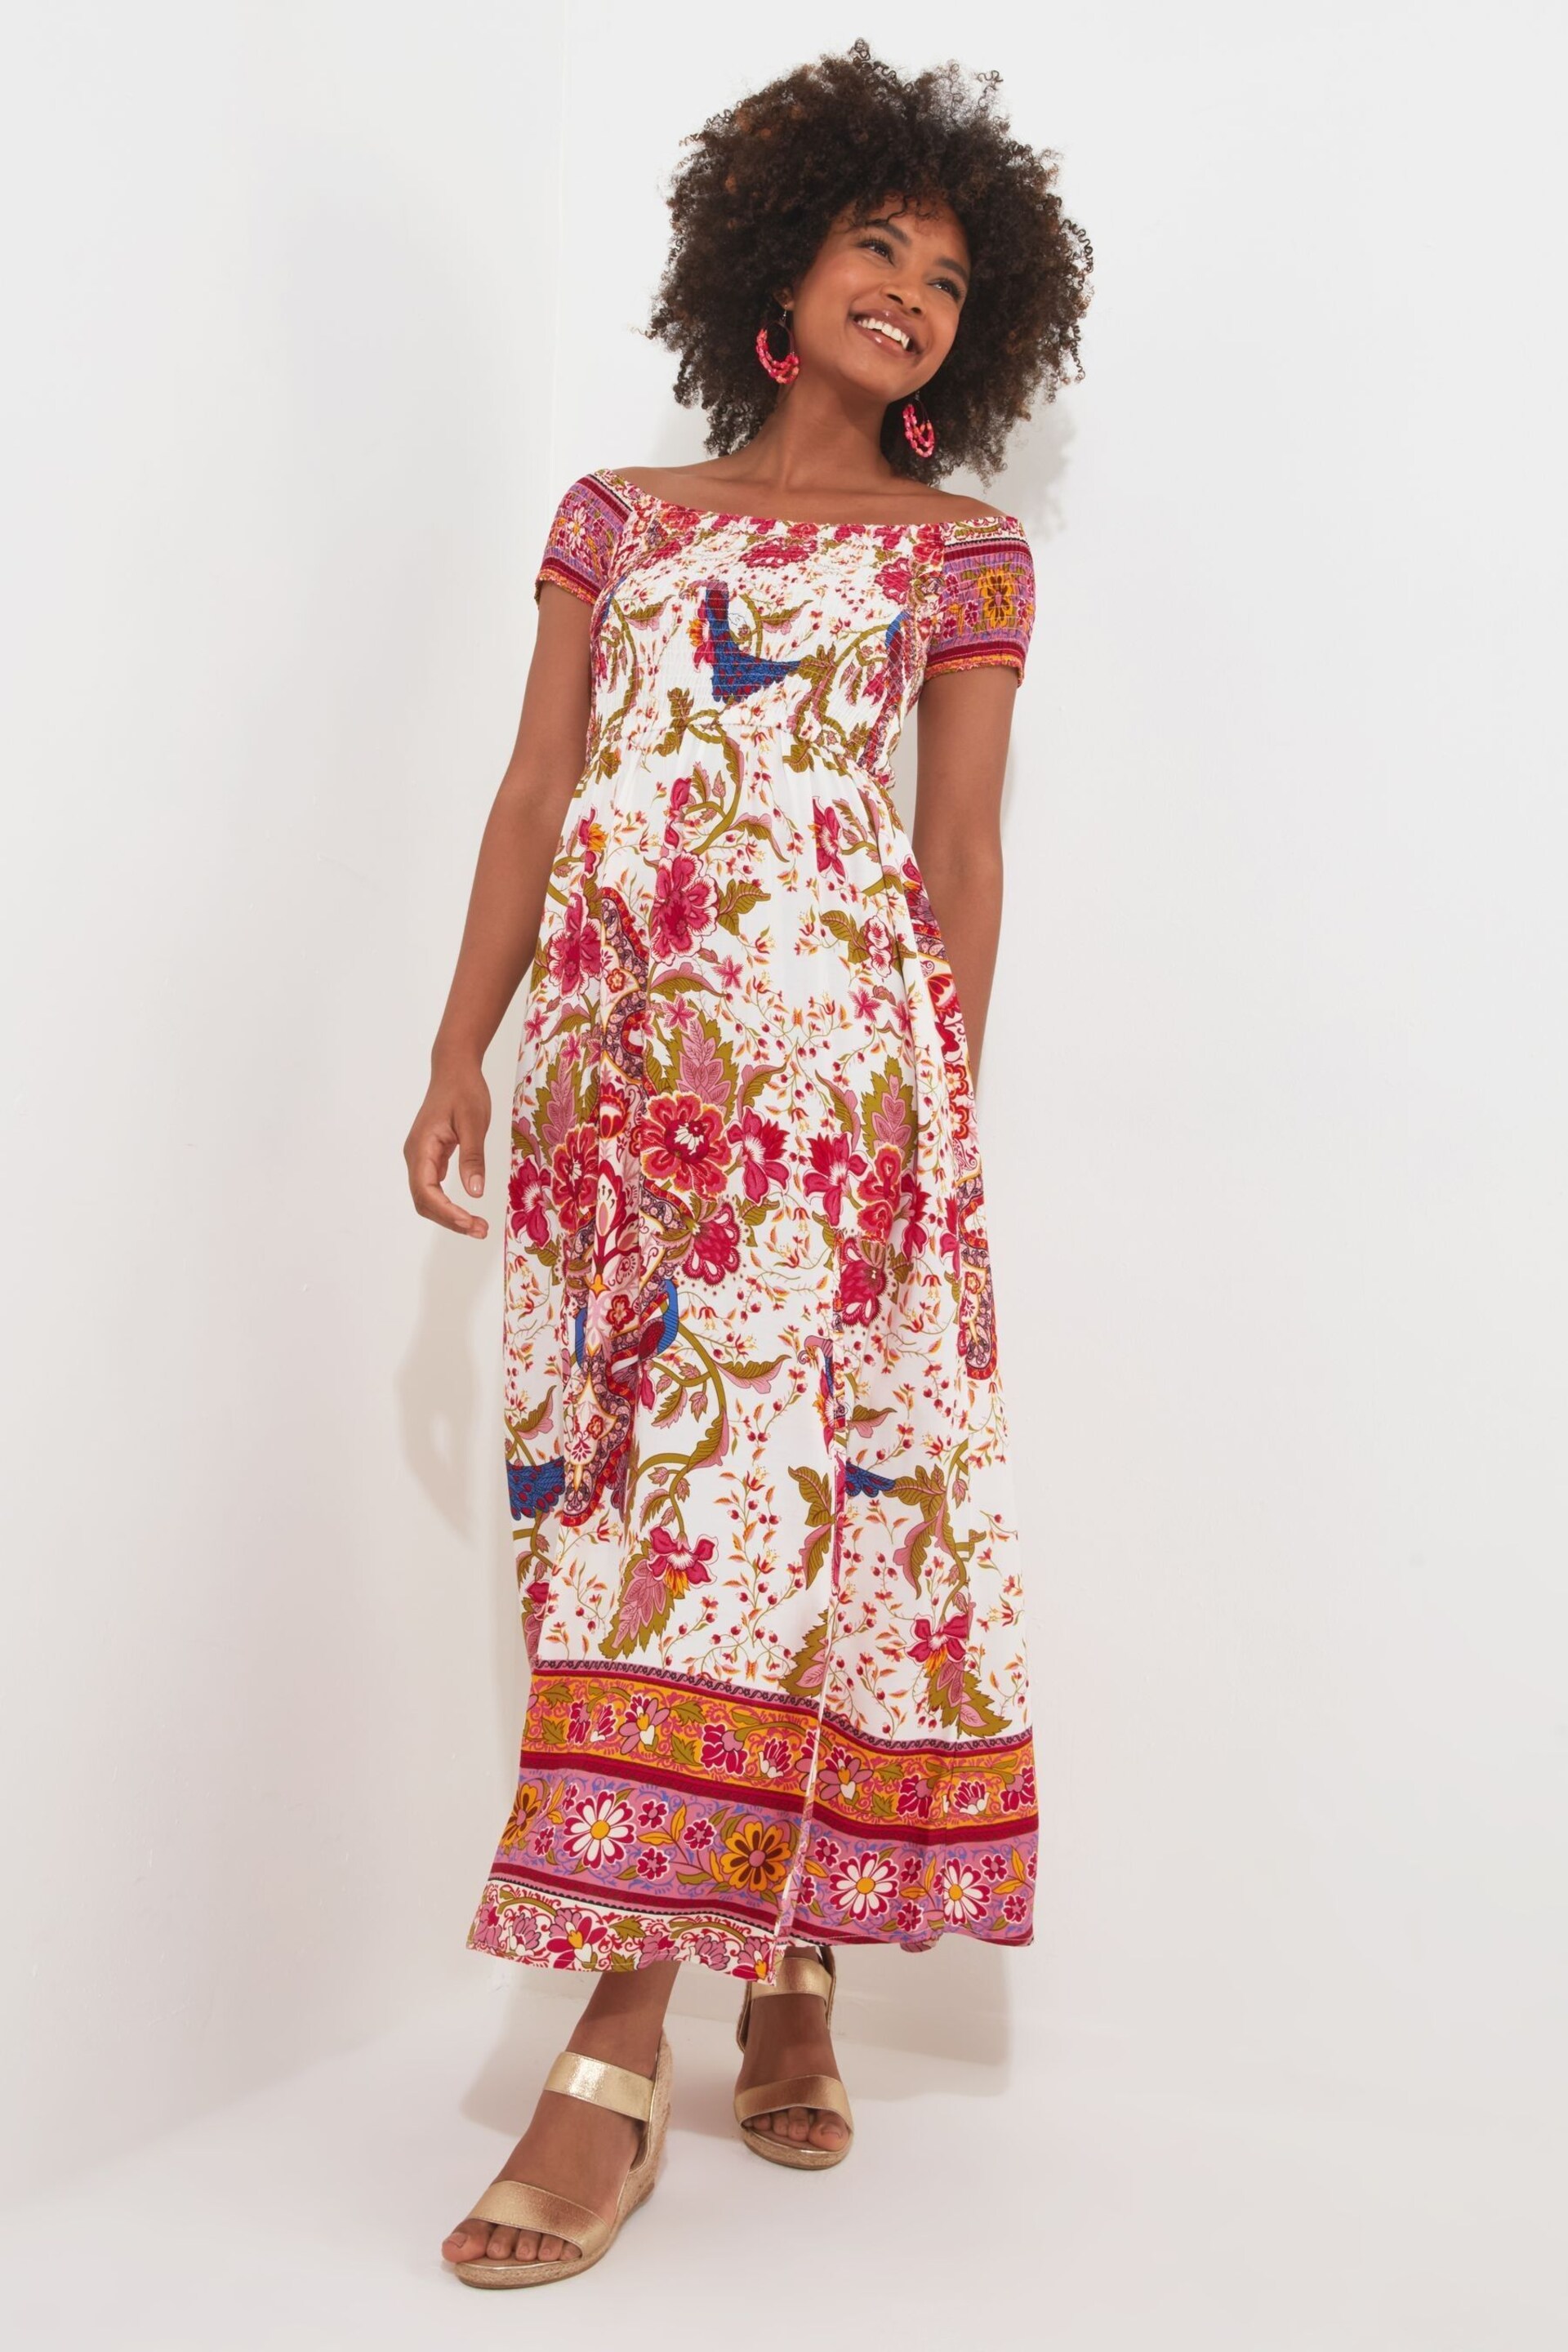 Joe Browns Pink Short Sleeve Border Print Maxi Dress - Image 2 of 7